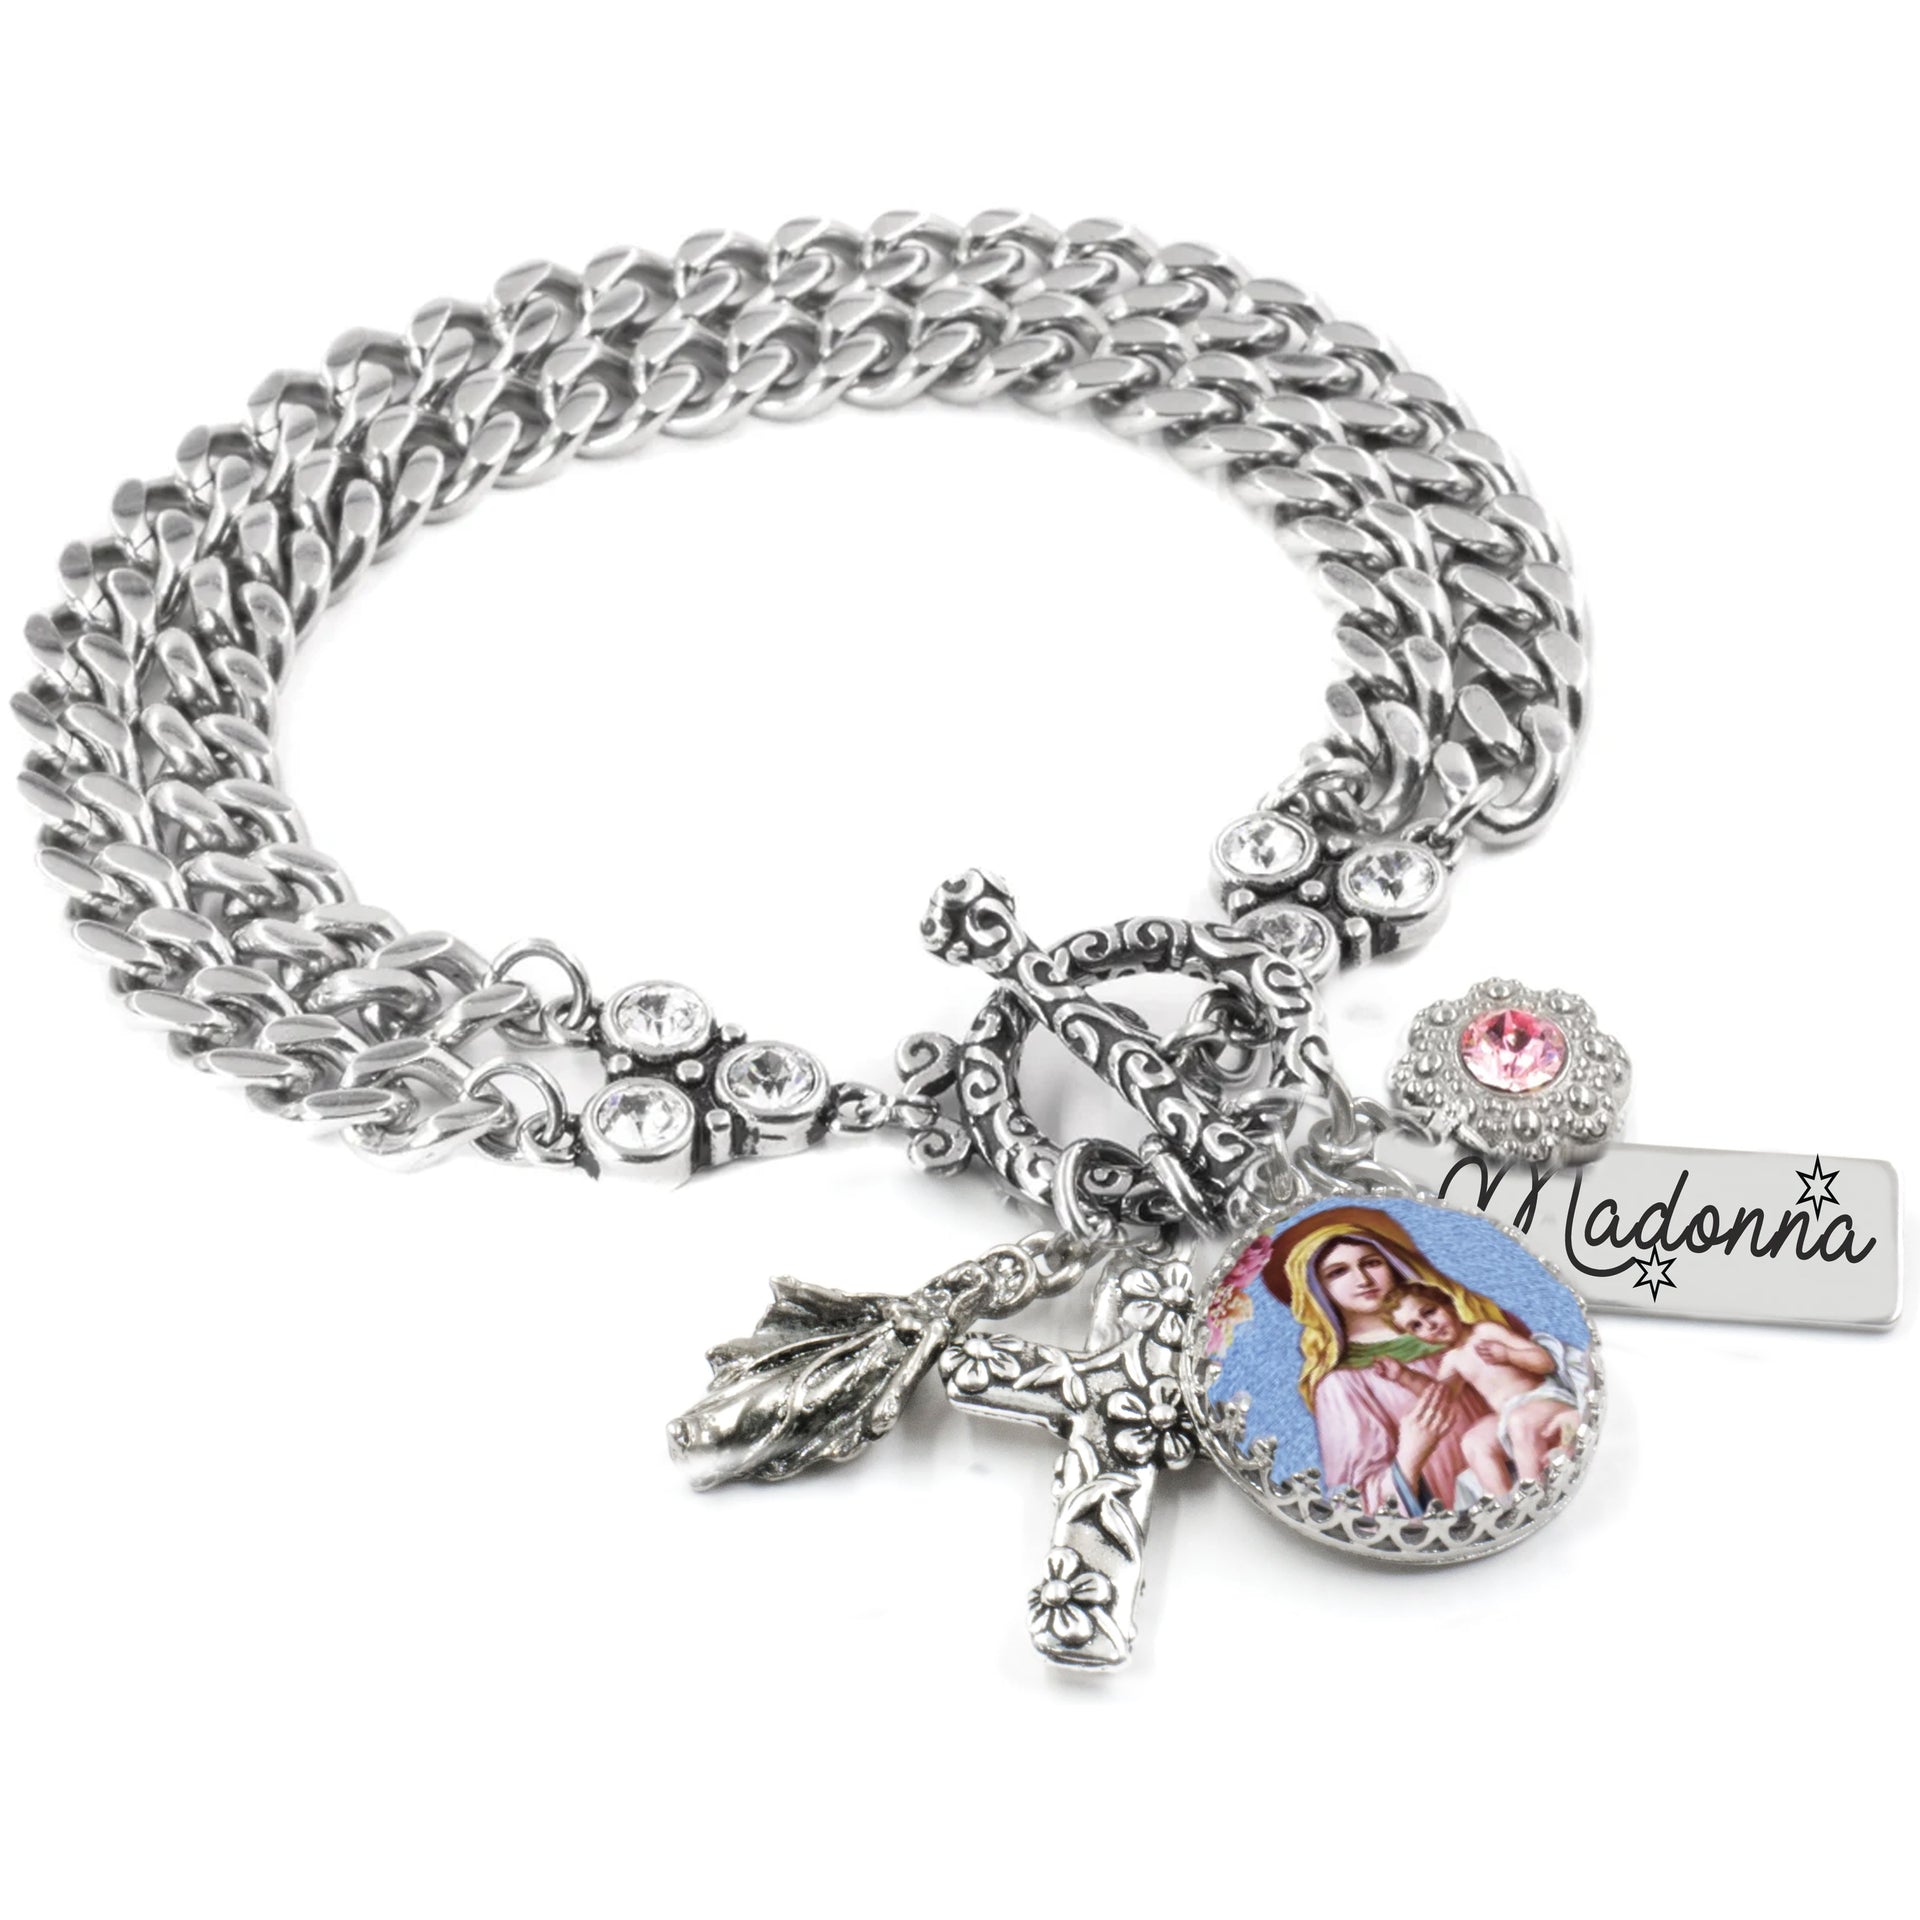 madonna charm bracelet religious jewelry